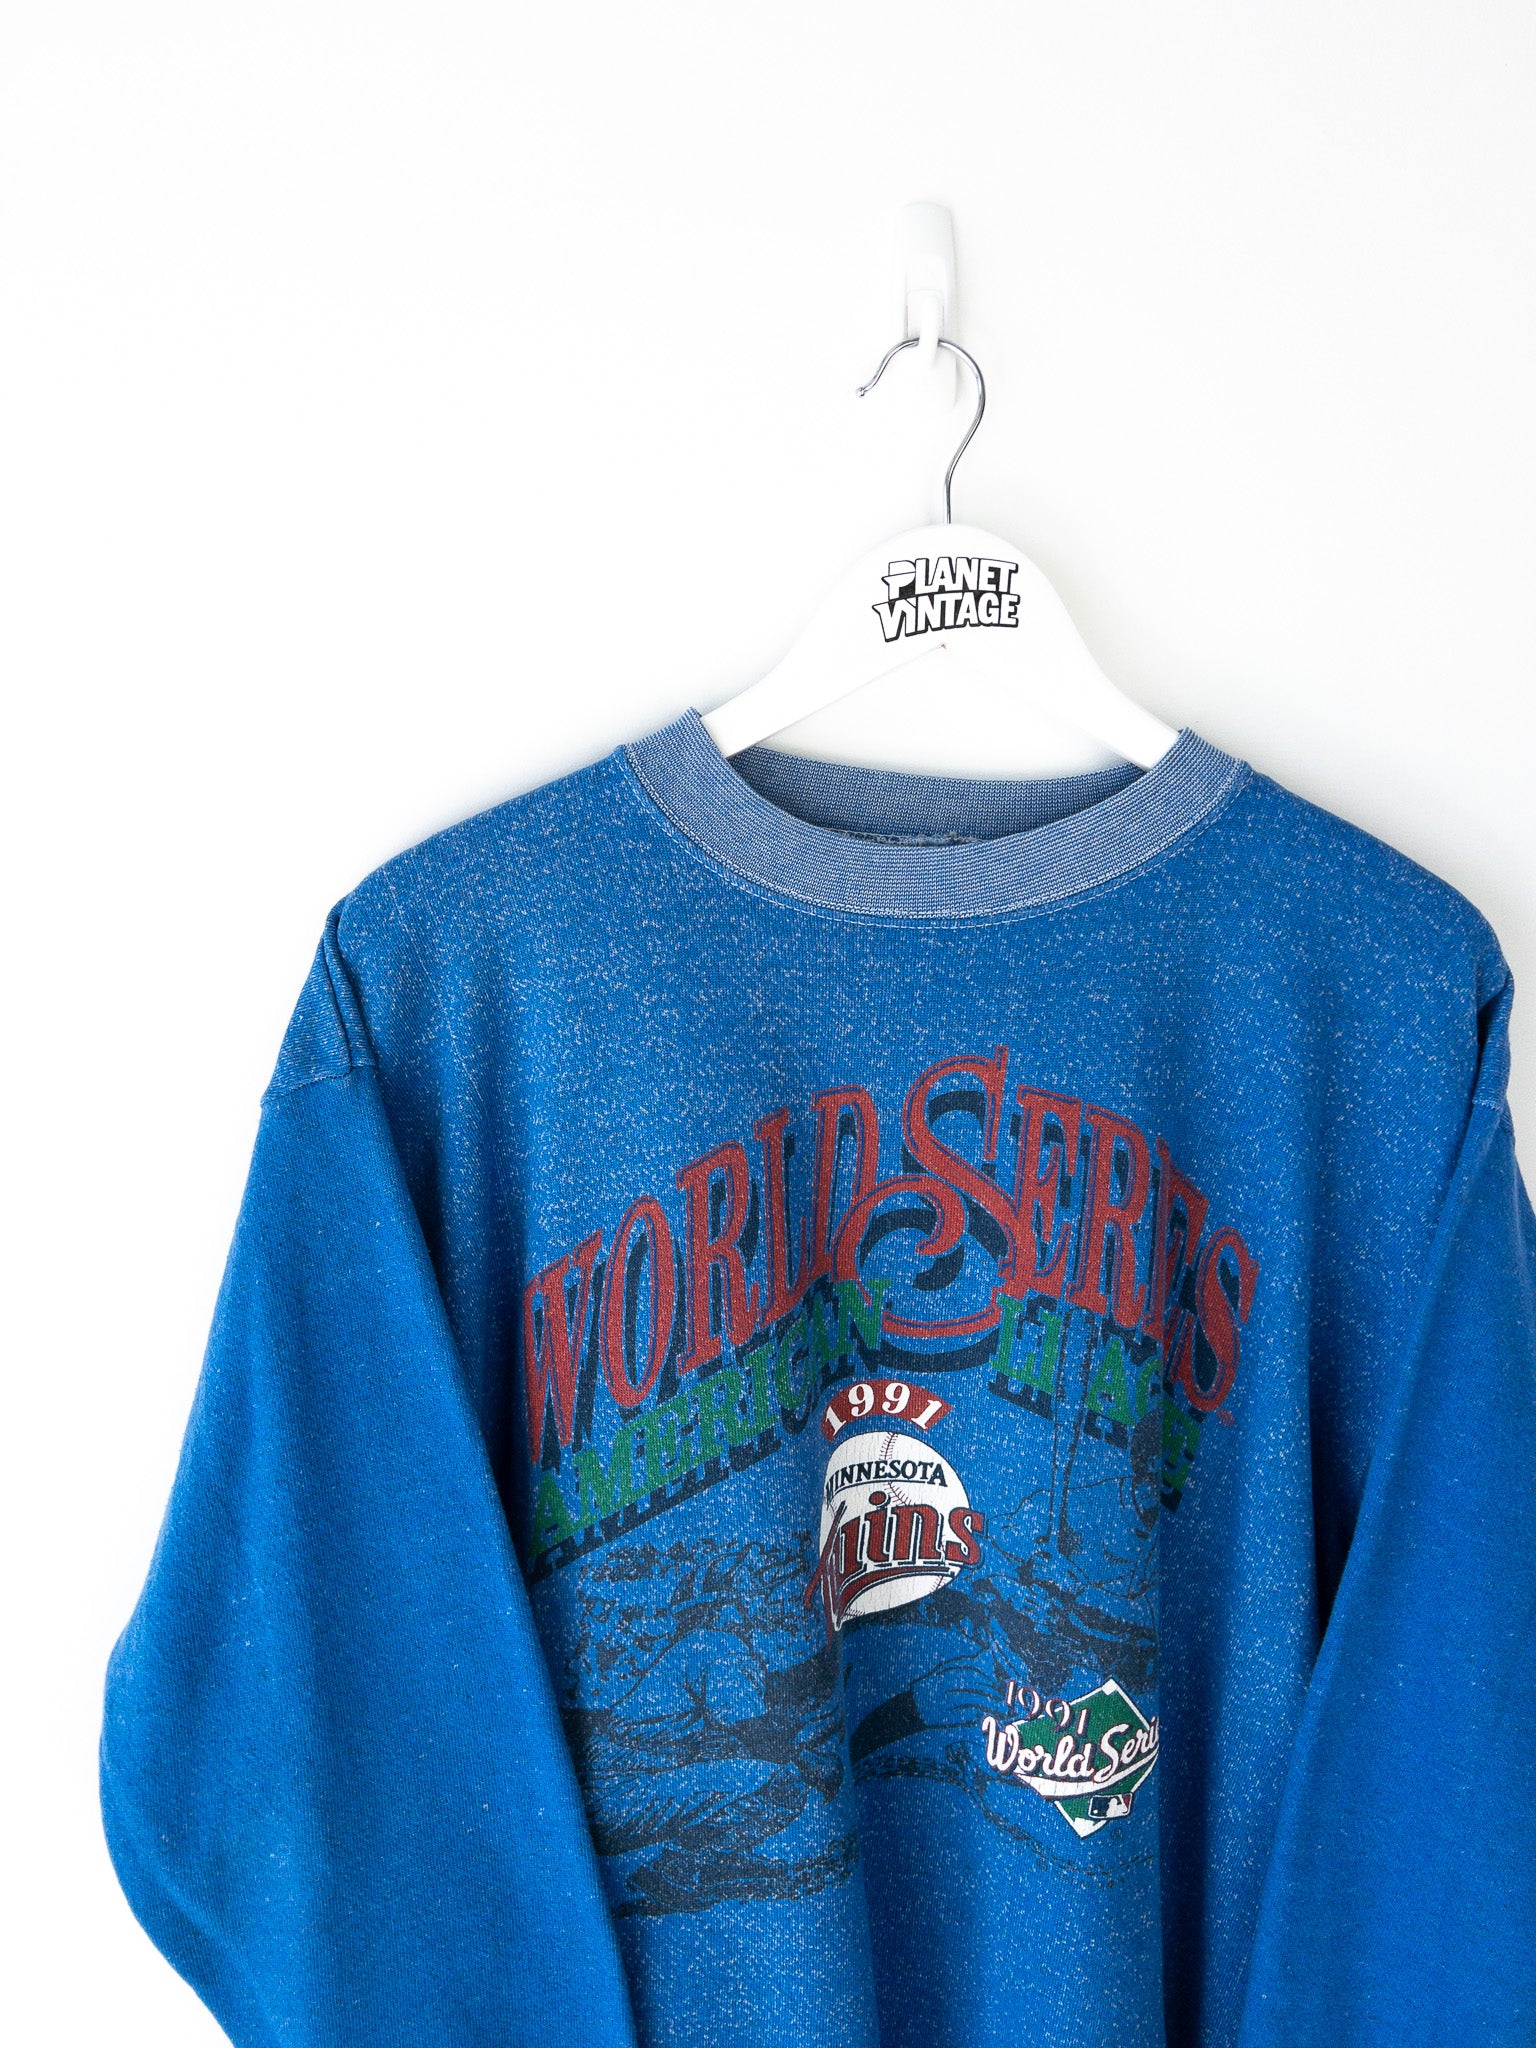 Vintage Minnesota Twins World Series 1991 Sweatshirt (L)